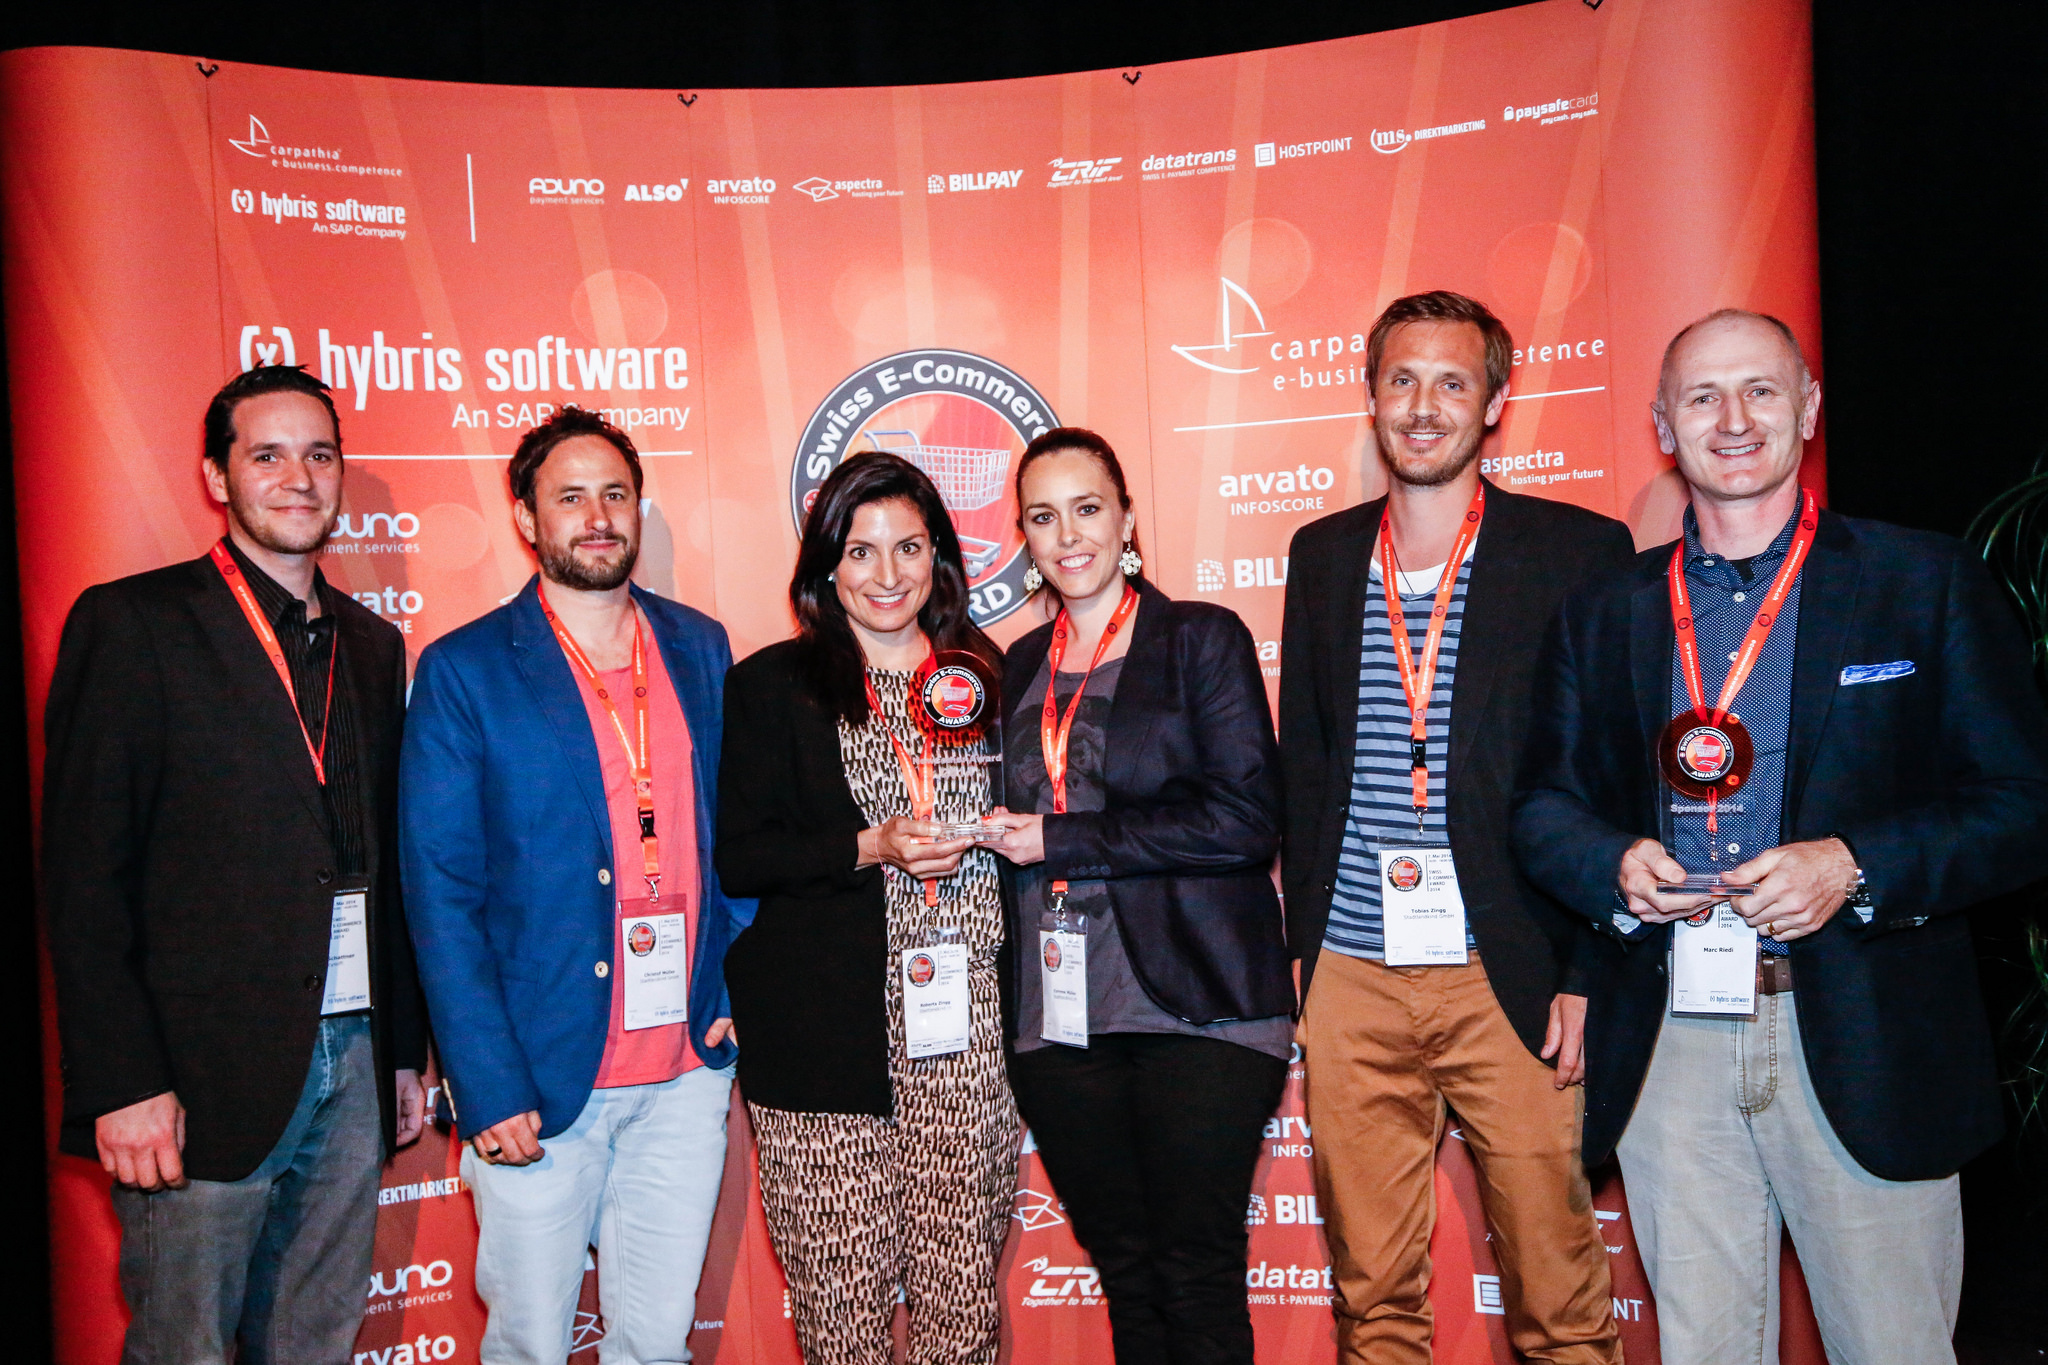 Das Team von stadtlandkind.ch - Gewinner Swiss E-Commerce Newcomer Award 2014 mit Tobias Zingg (2. von rechts) und Marc Riedi vom Kategorien-Sponsor Paysafecard (rechts)